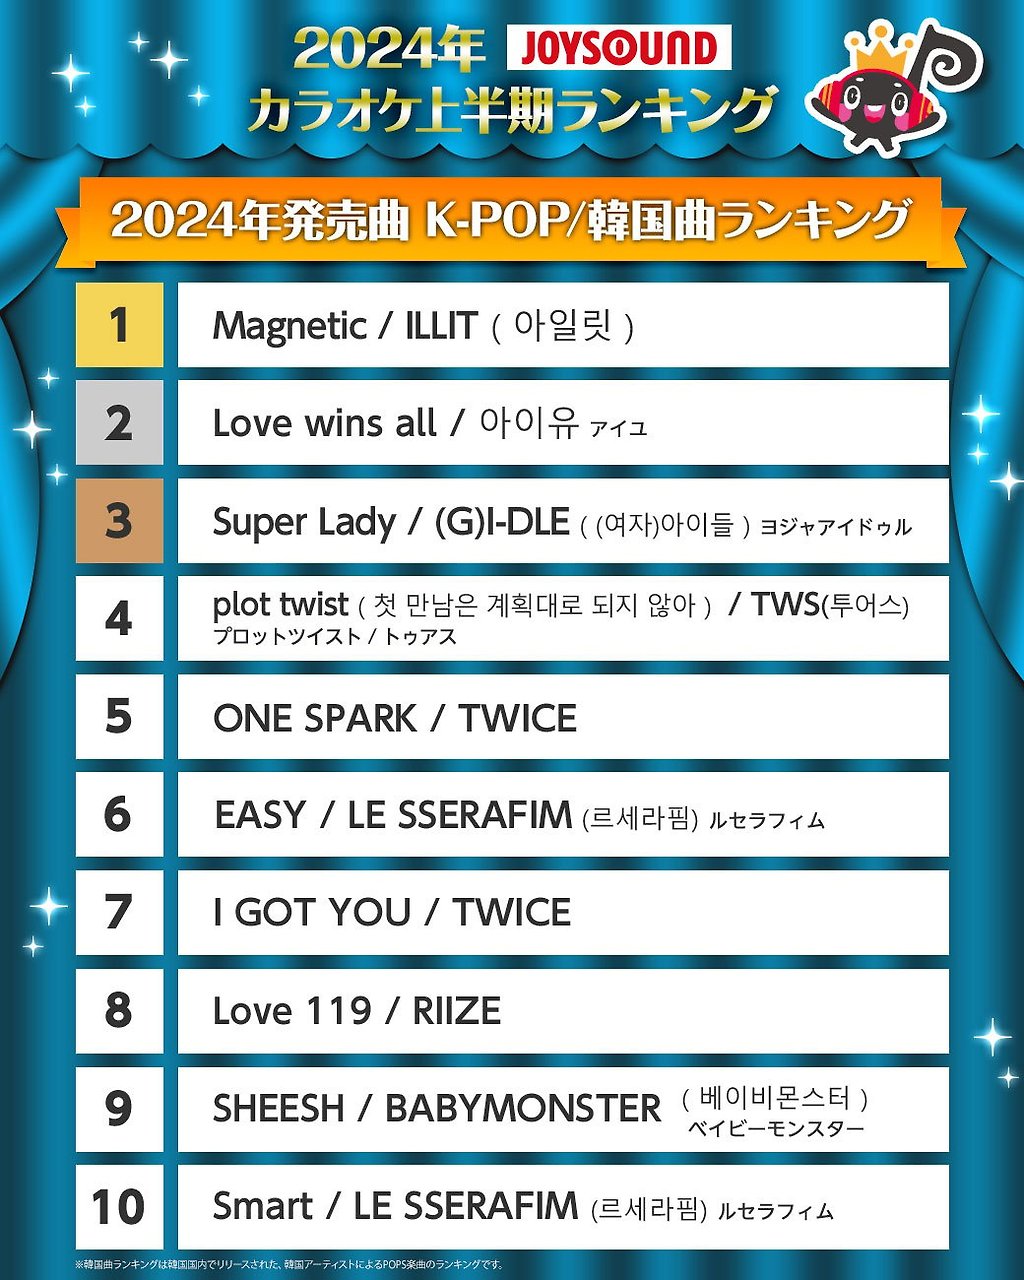 올해 상반기 일본 노래방에서 가장 많이 불린 KPOP 노래 순위